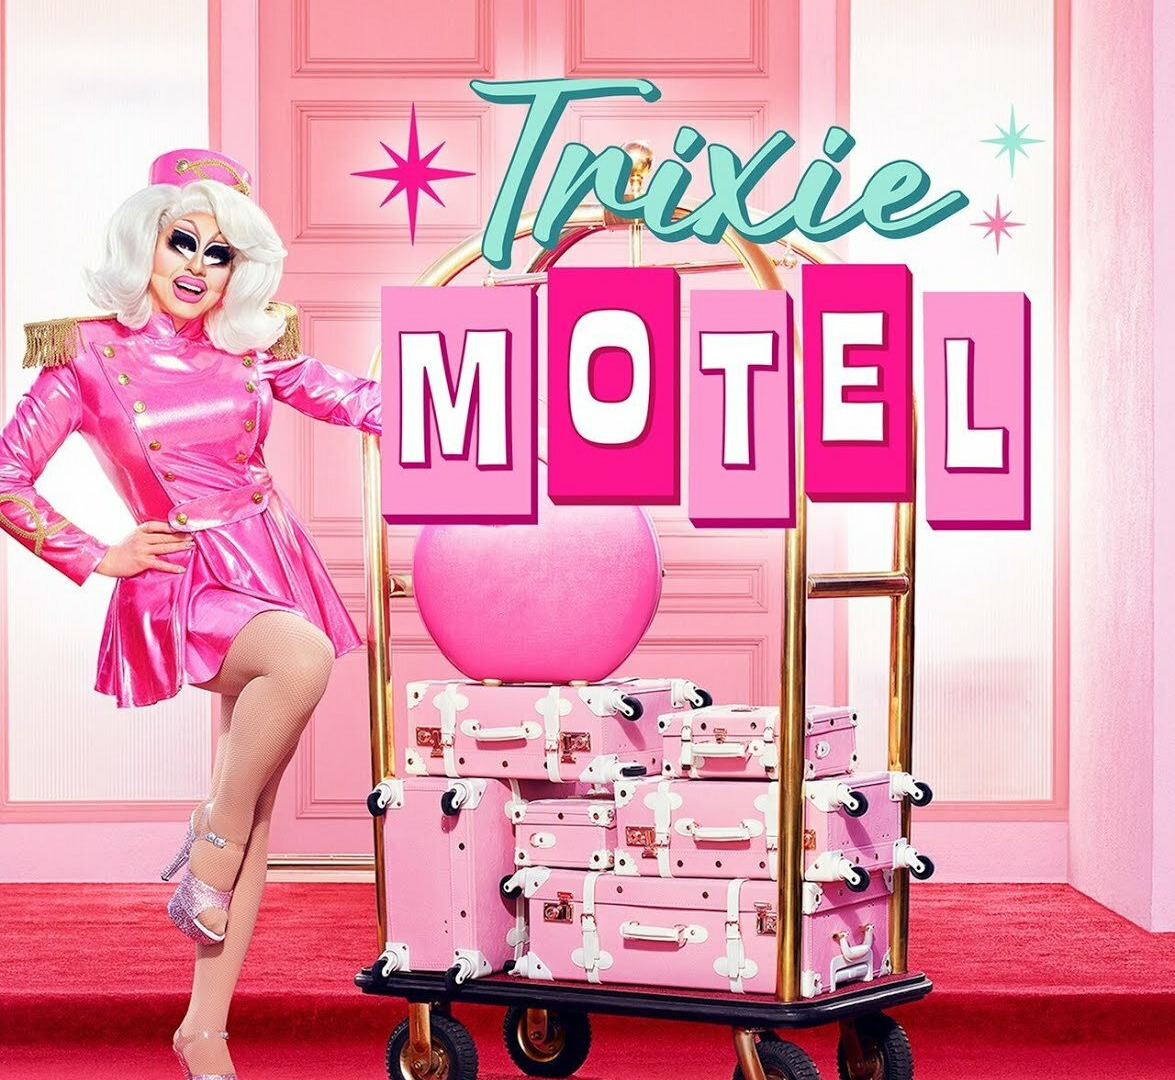 Show Trixie Motel